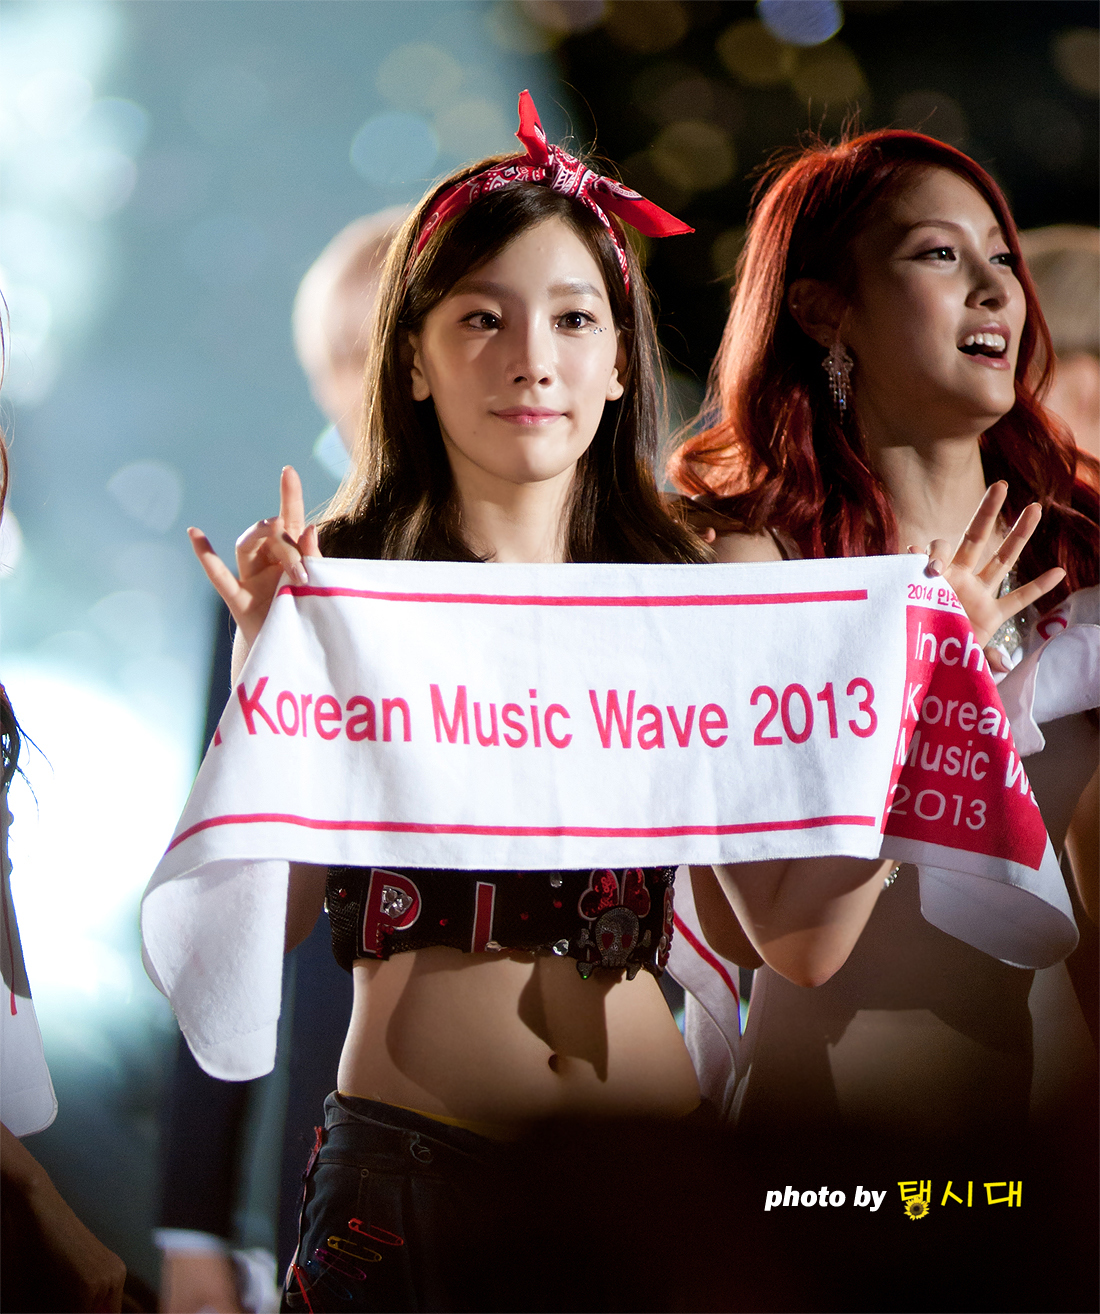 [PIC][01-09-2013]Hình ảnh mới nhất từ "Incheon Korean Music Wave 2013" của SNSD và MC YulTi vào tối nay - Page 4 2234CF3F5229D9F4220CB3